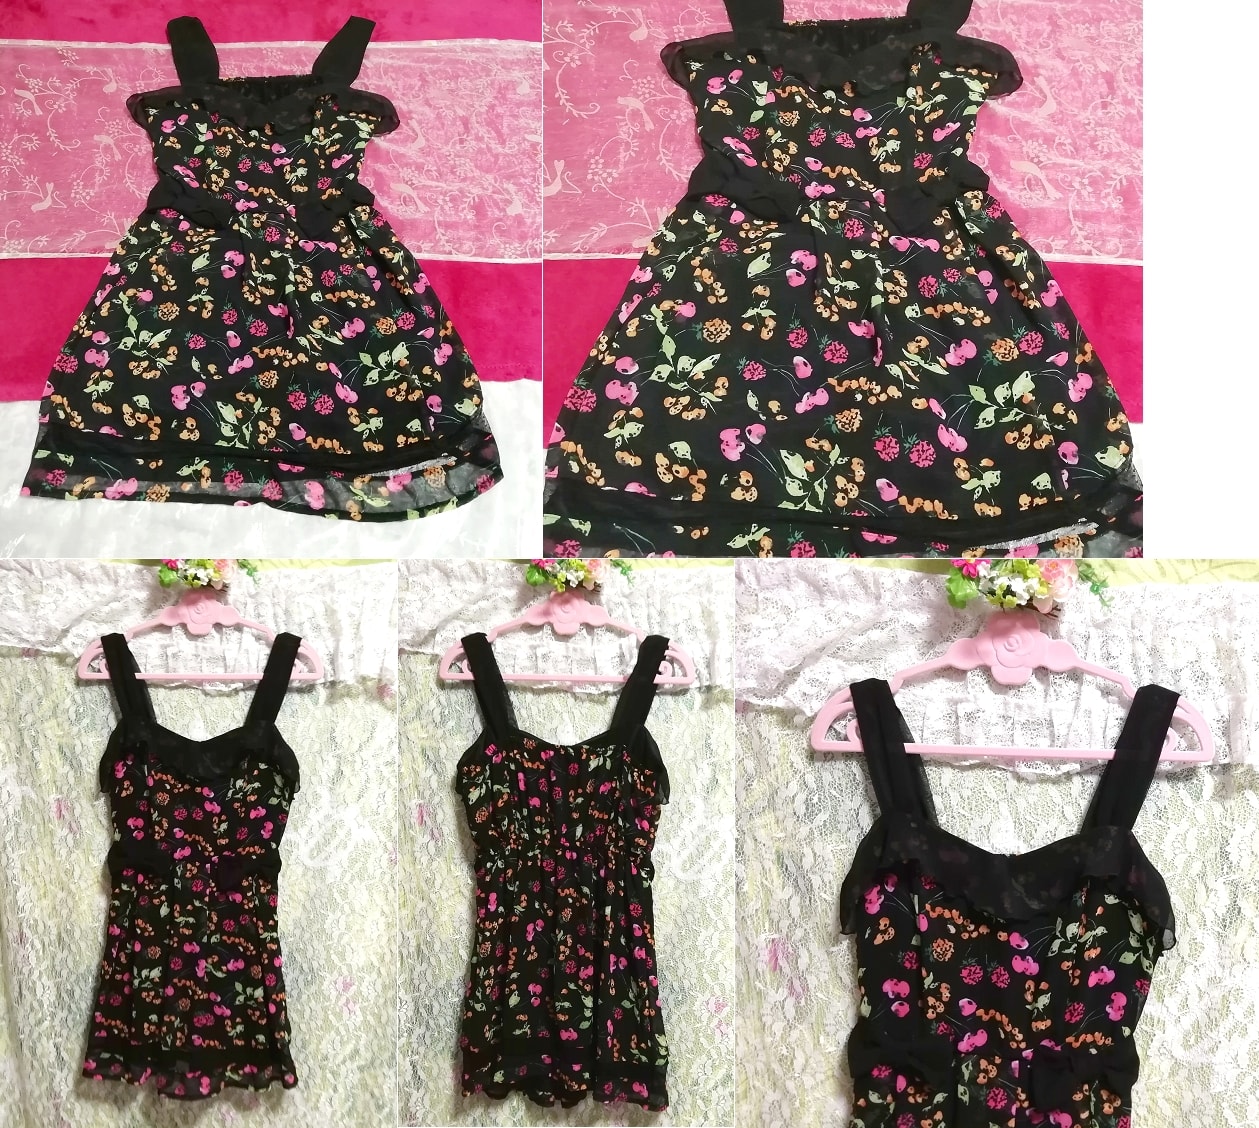 Black fruit pattern chiffon negligee nightgown sleeveless dress, mini skirt, m size